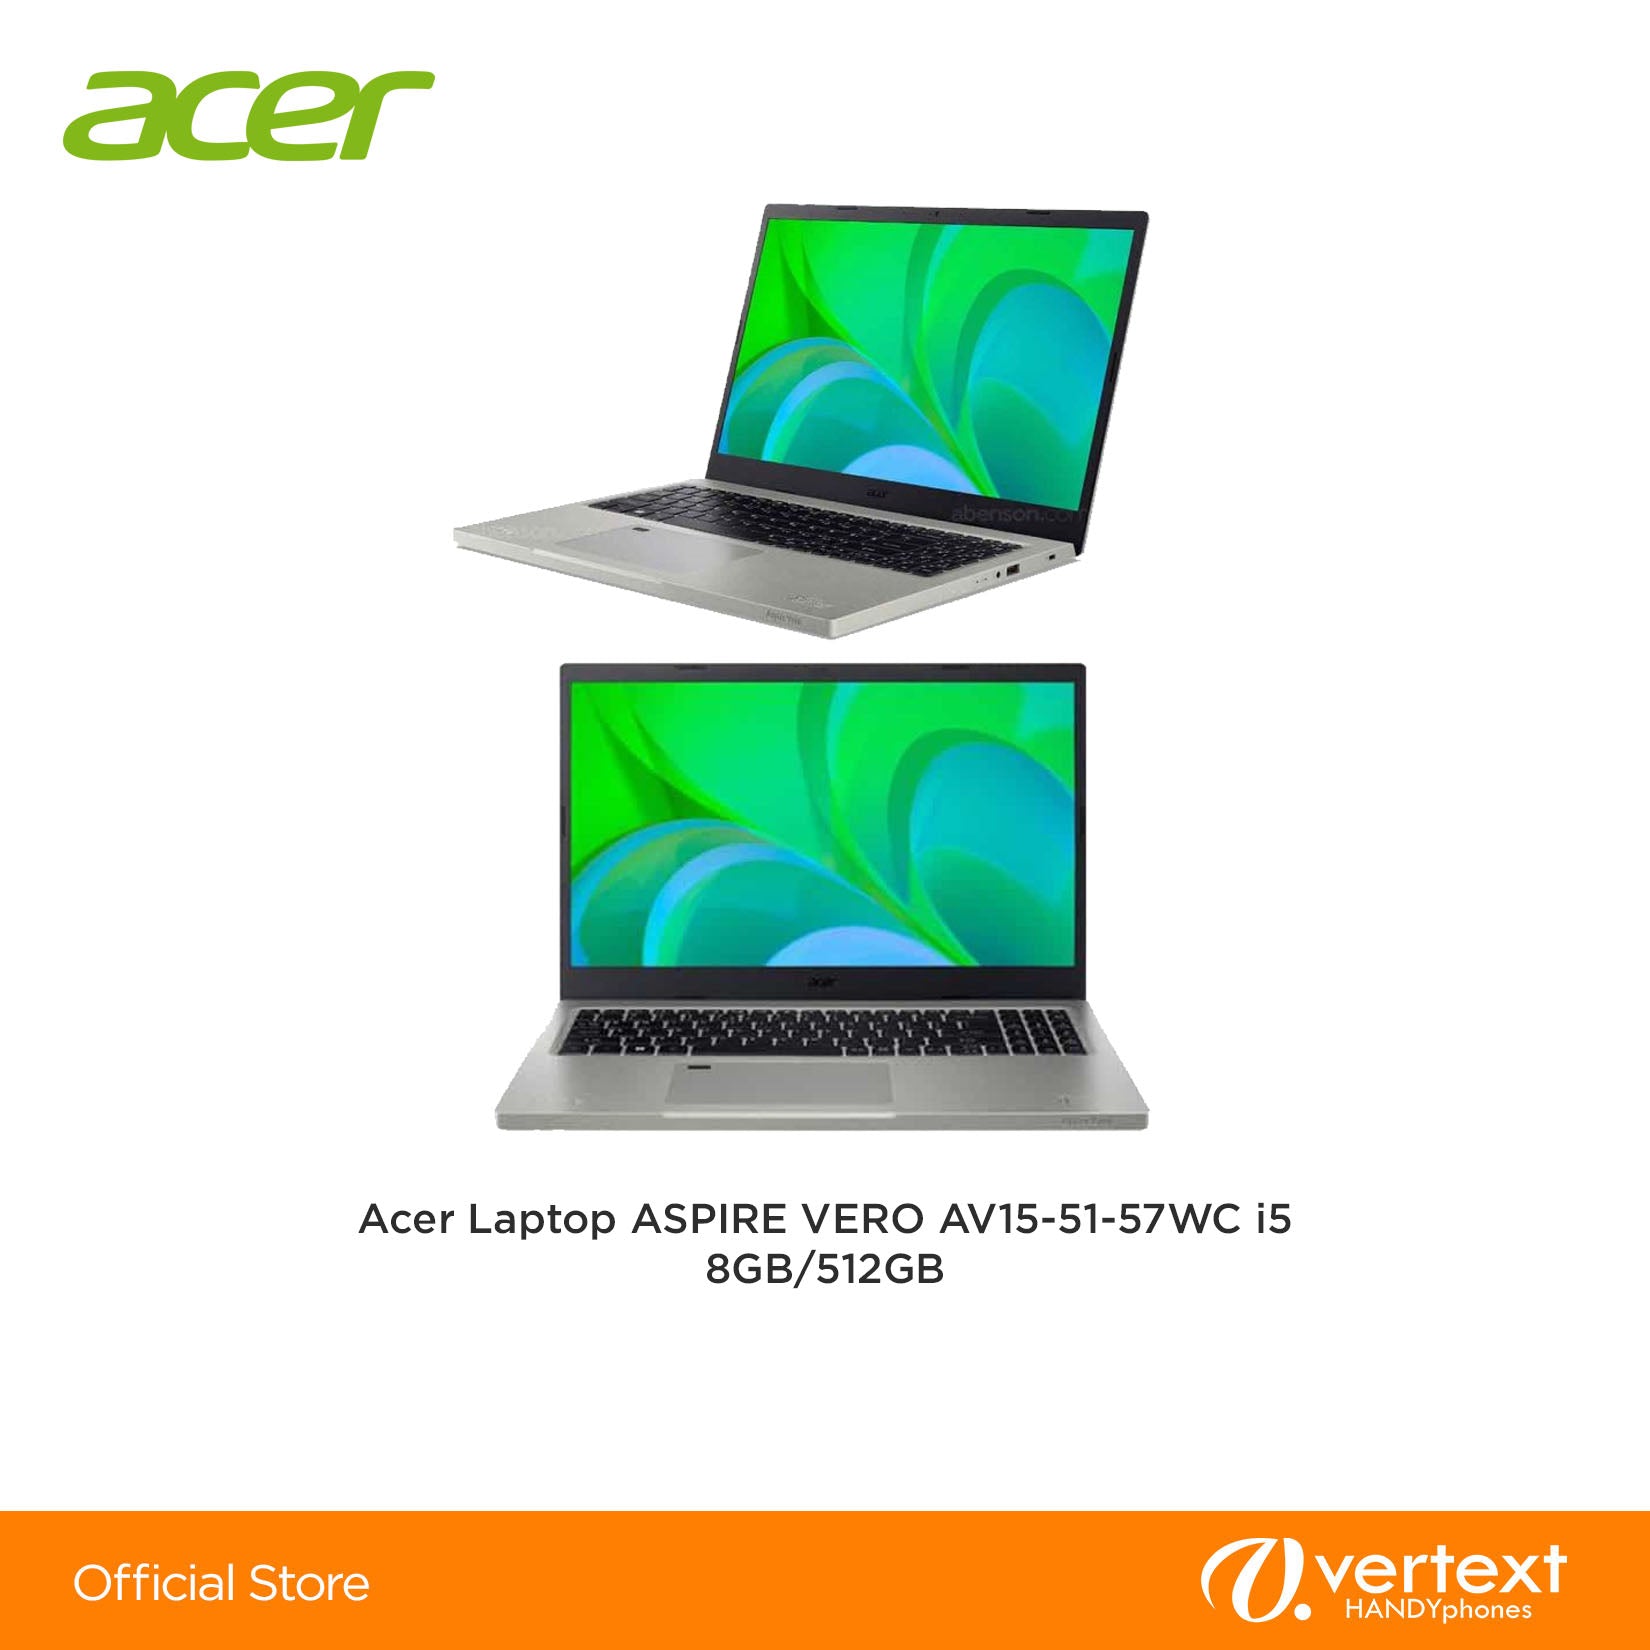 Acer Laptop ASPIRE VERO AV15-51-57WC i5